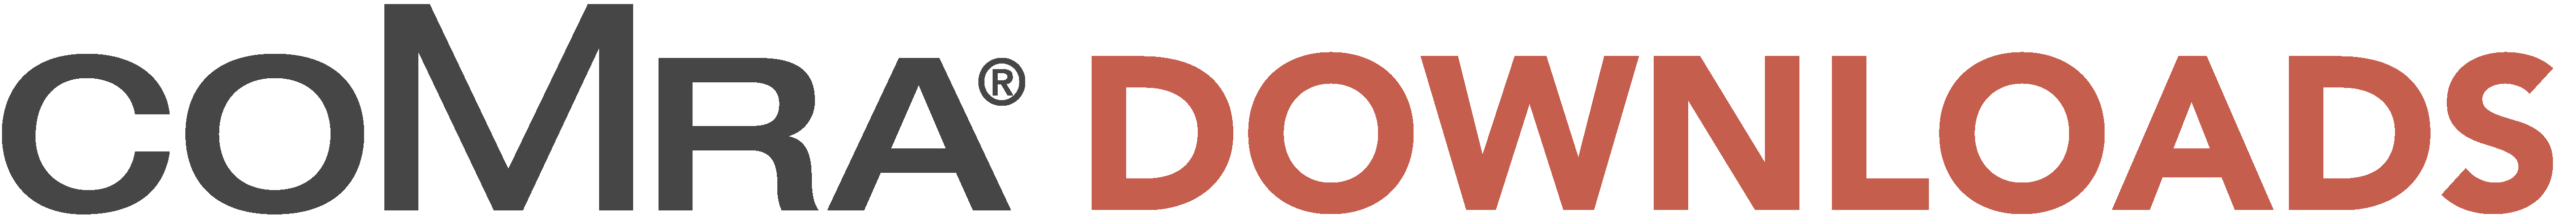 comra downloads logo